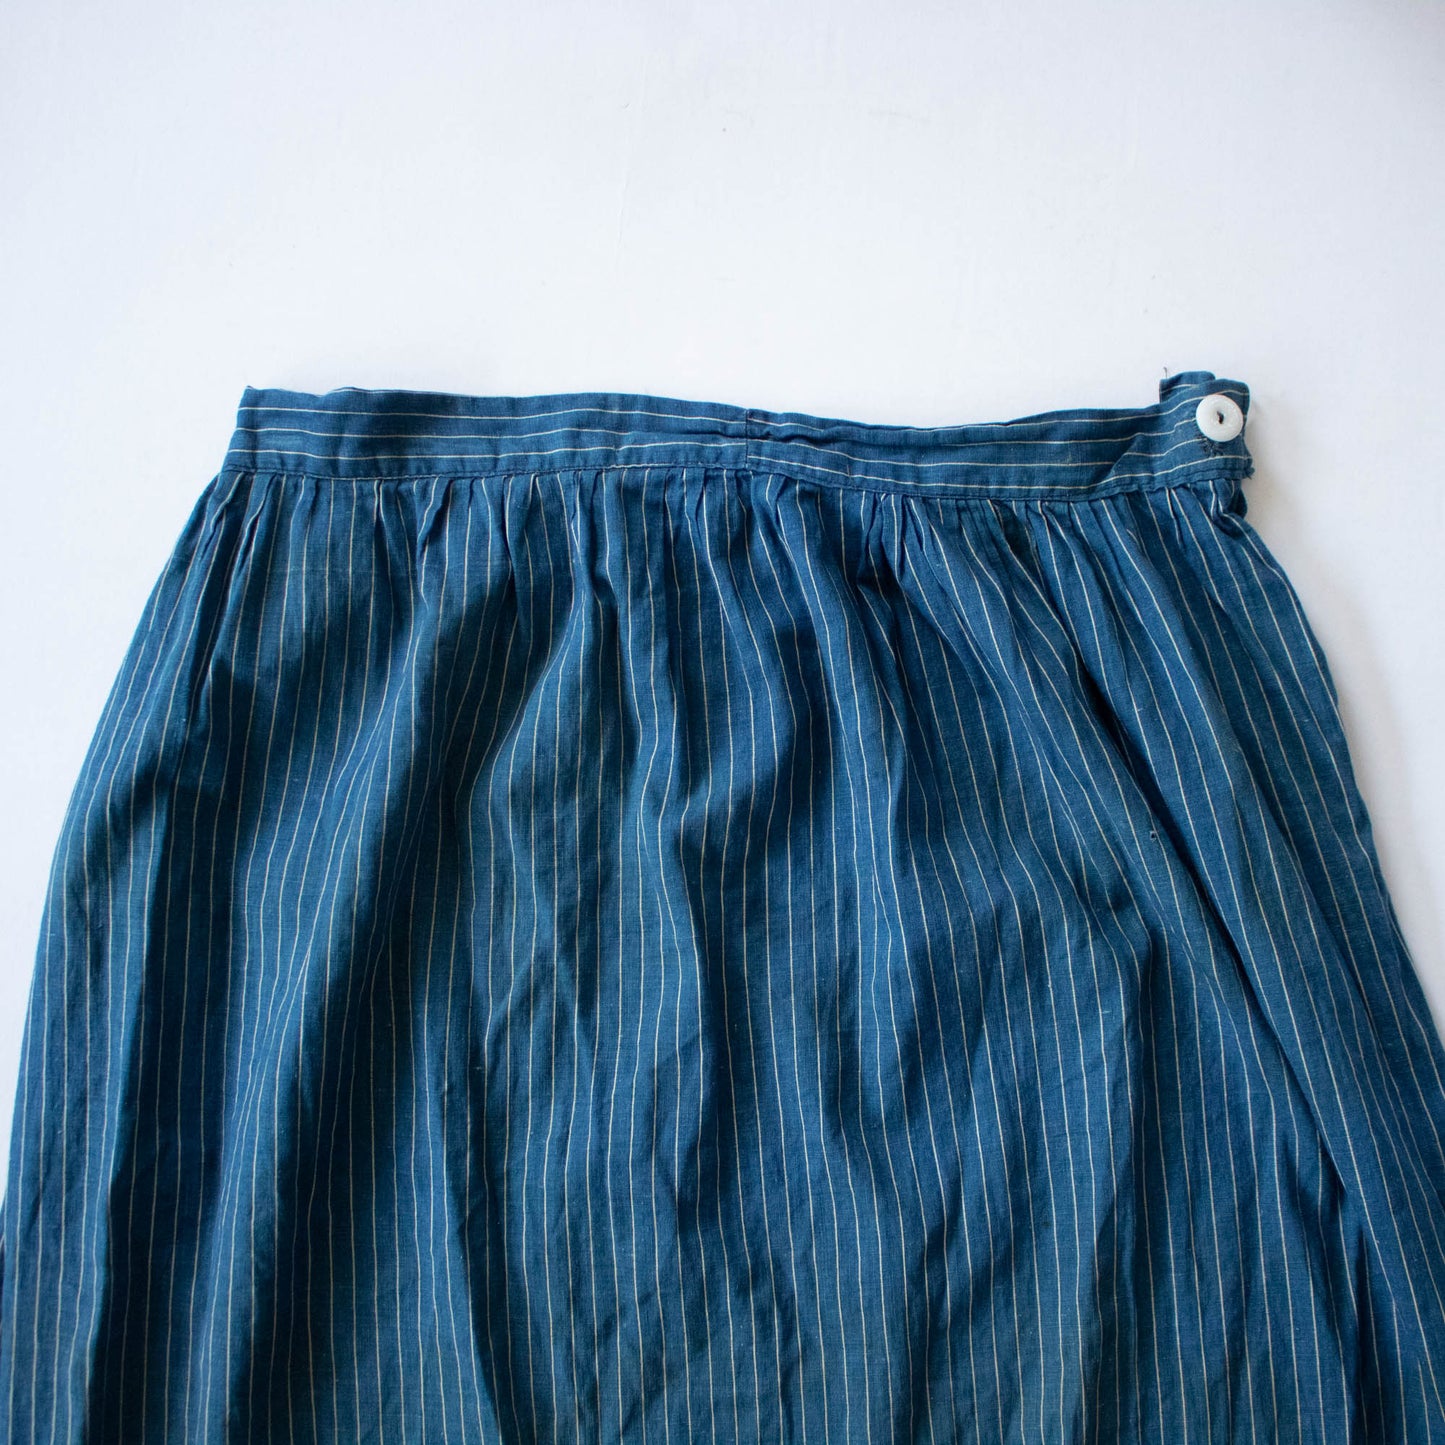 Indigo Striped Calico Skirt